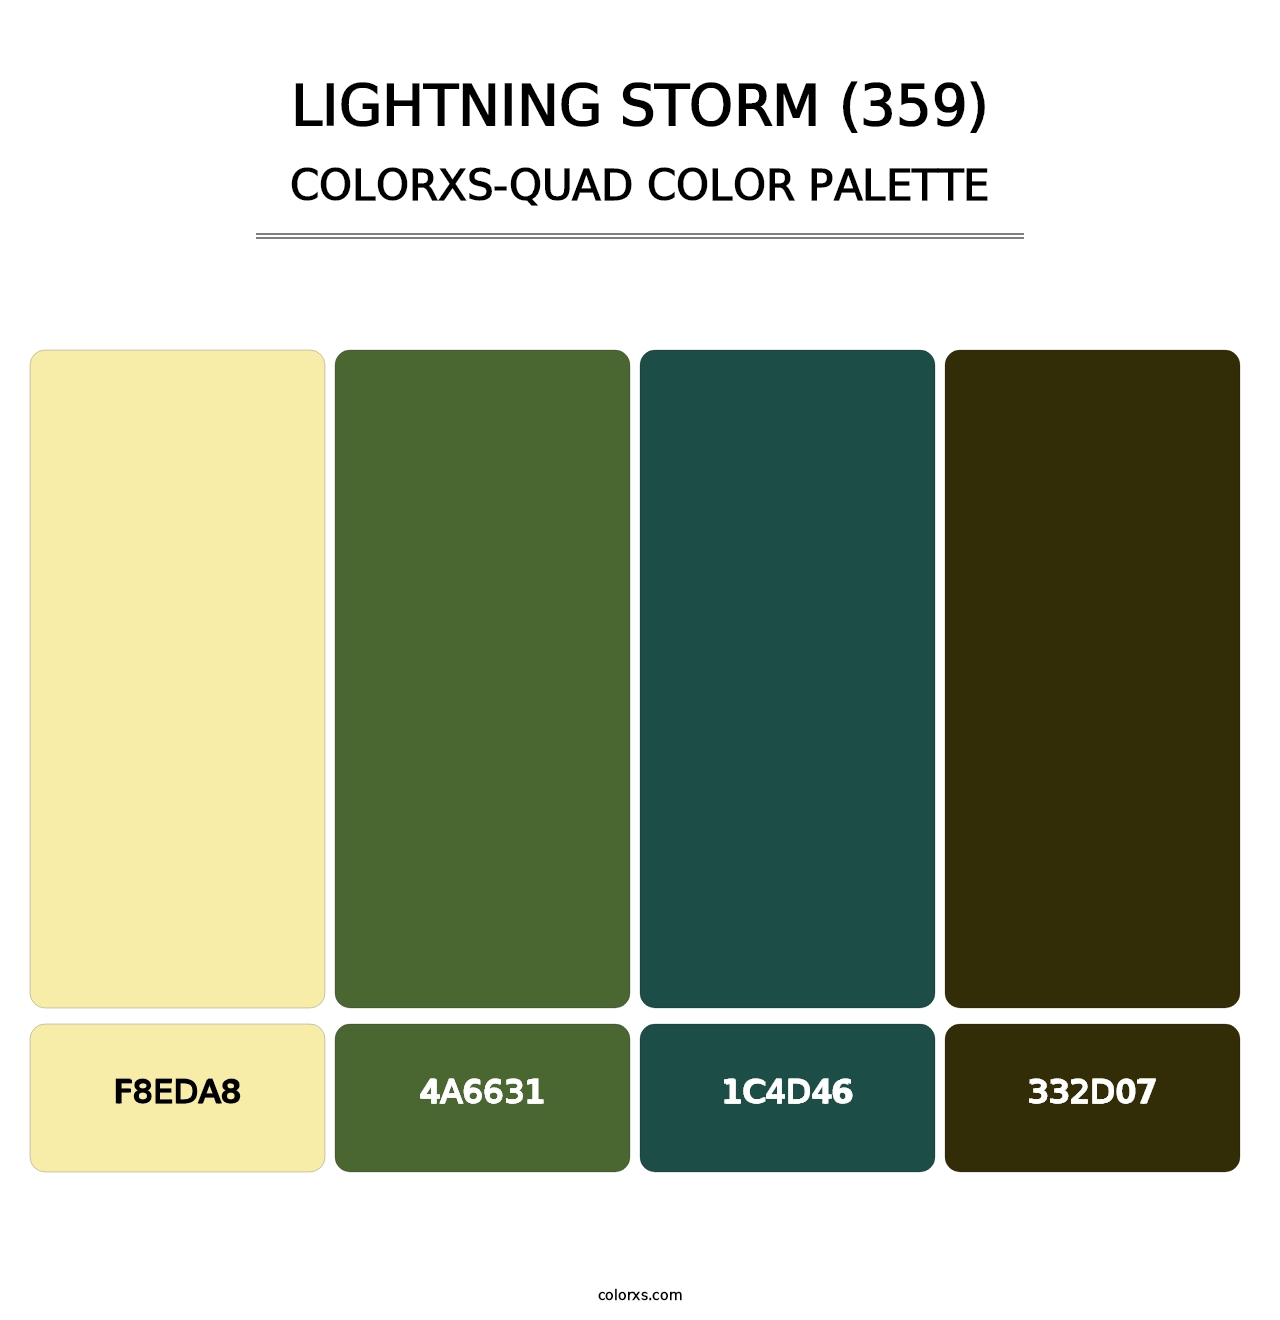 Lightning Storm (359) - Colorxs Quad Palette